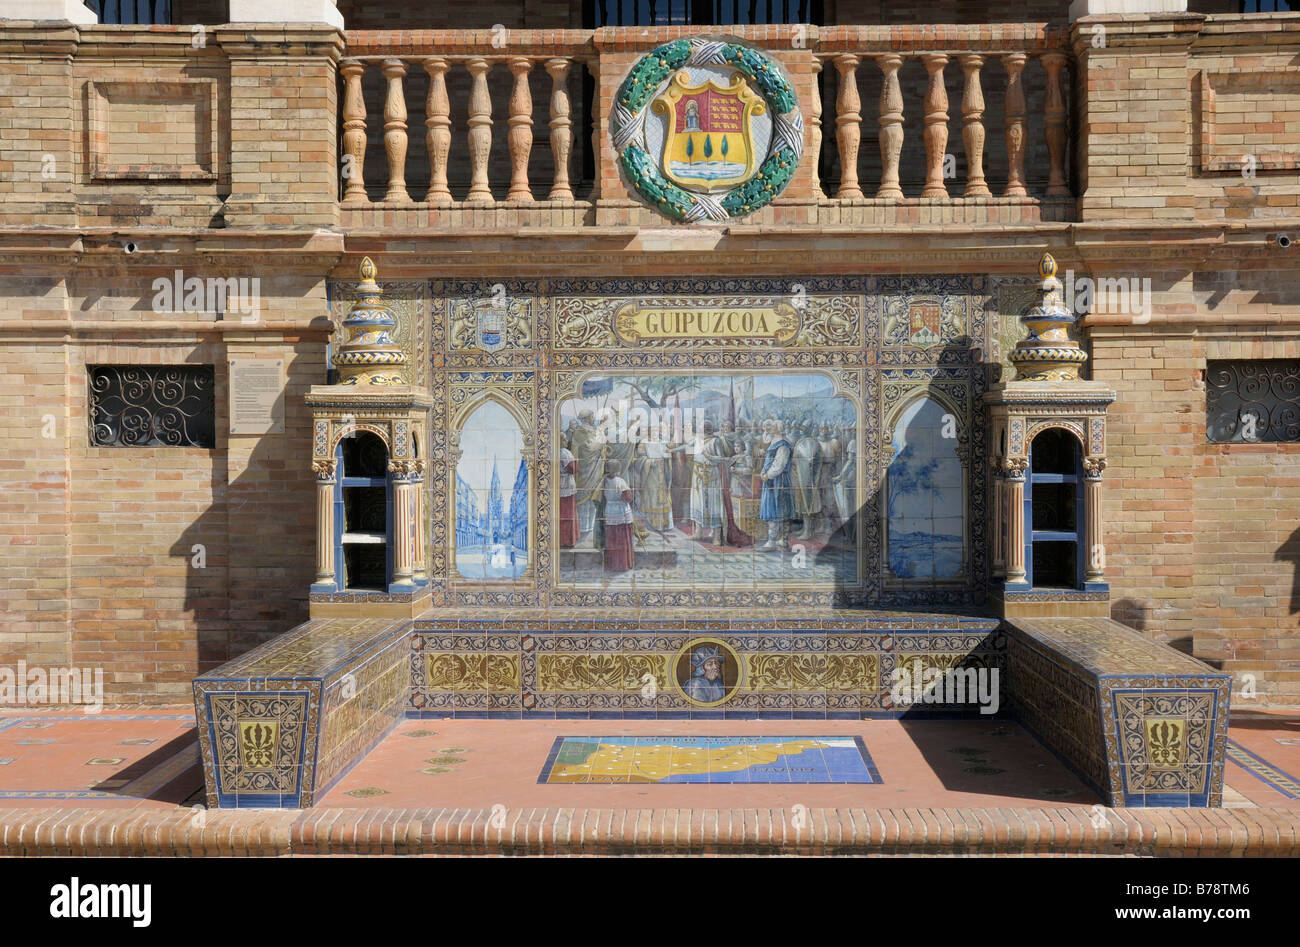 Azulejo, Mosaik Fliesen, Guipuzcoa, Plaza de Espana, Andalusien, Spanien, Europa Stockfoto